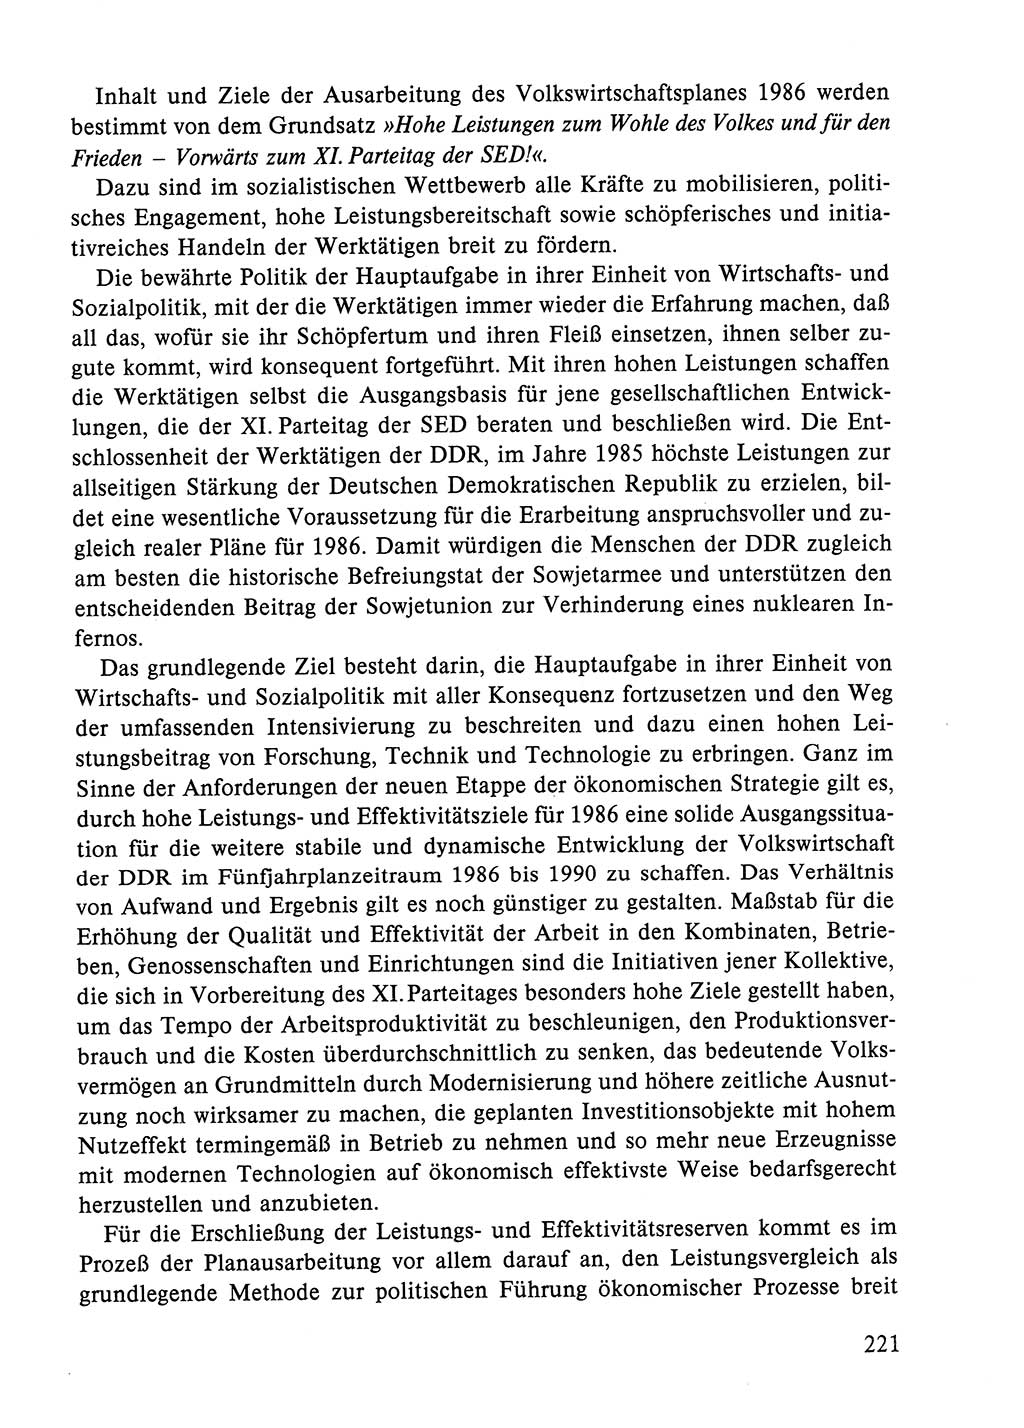 Dokumente der Sozialistischen Einheitspartei Deutschlands (SED) [Deutsche Demokratische Republik (DDR)] 1984-1985, Seite 206 (Dok. SED DDR 1984-1985, S. 206)